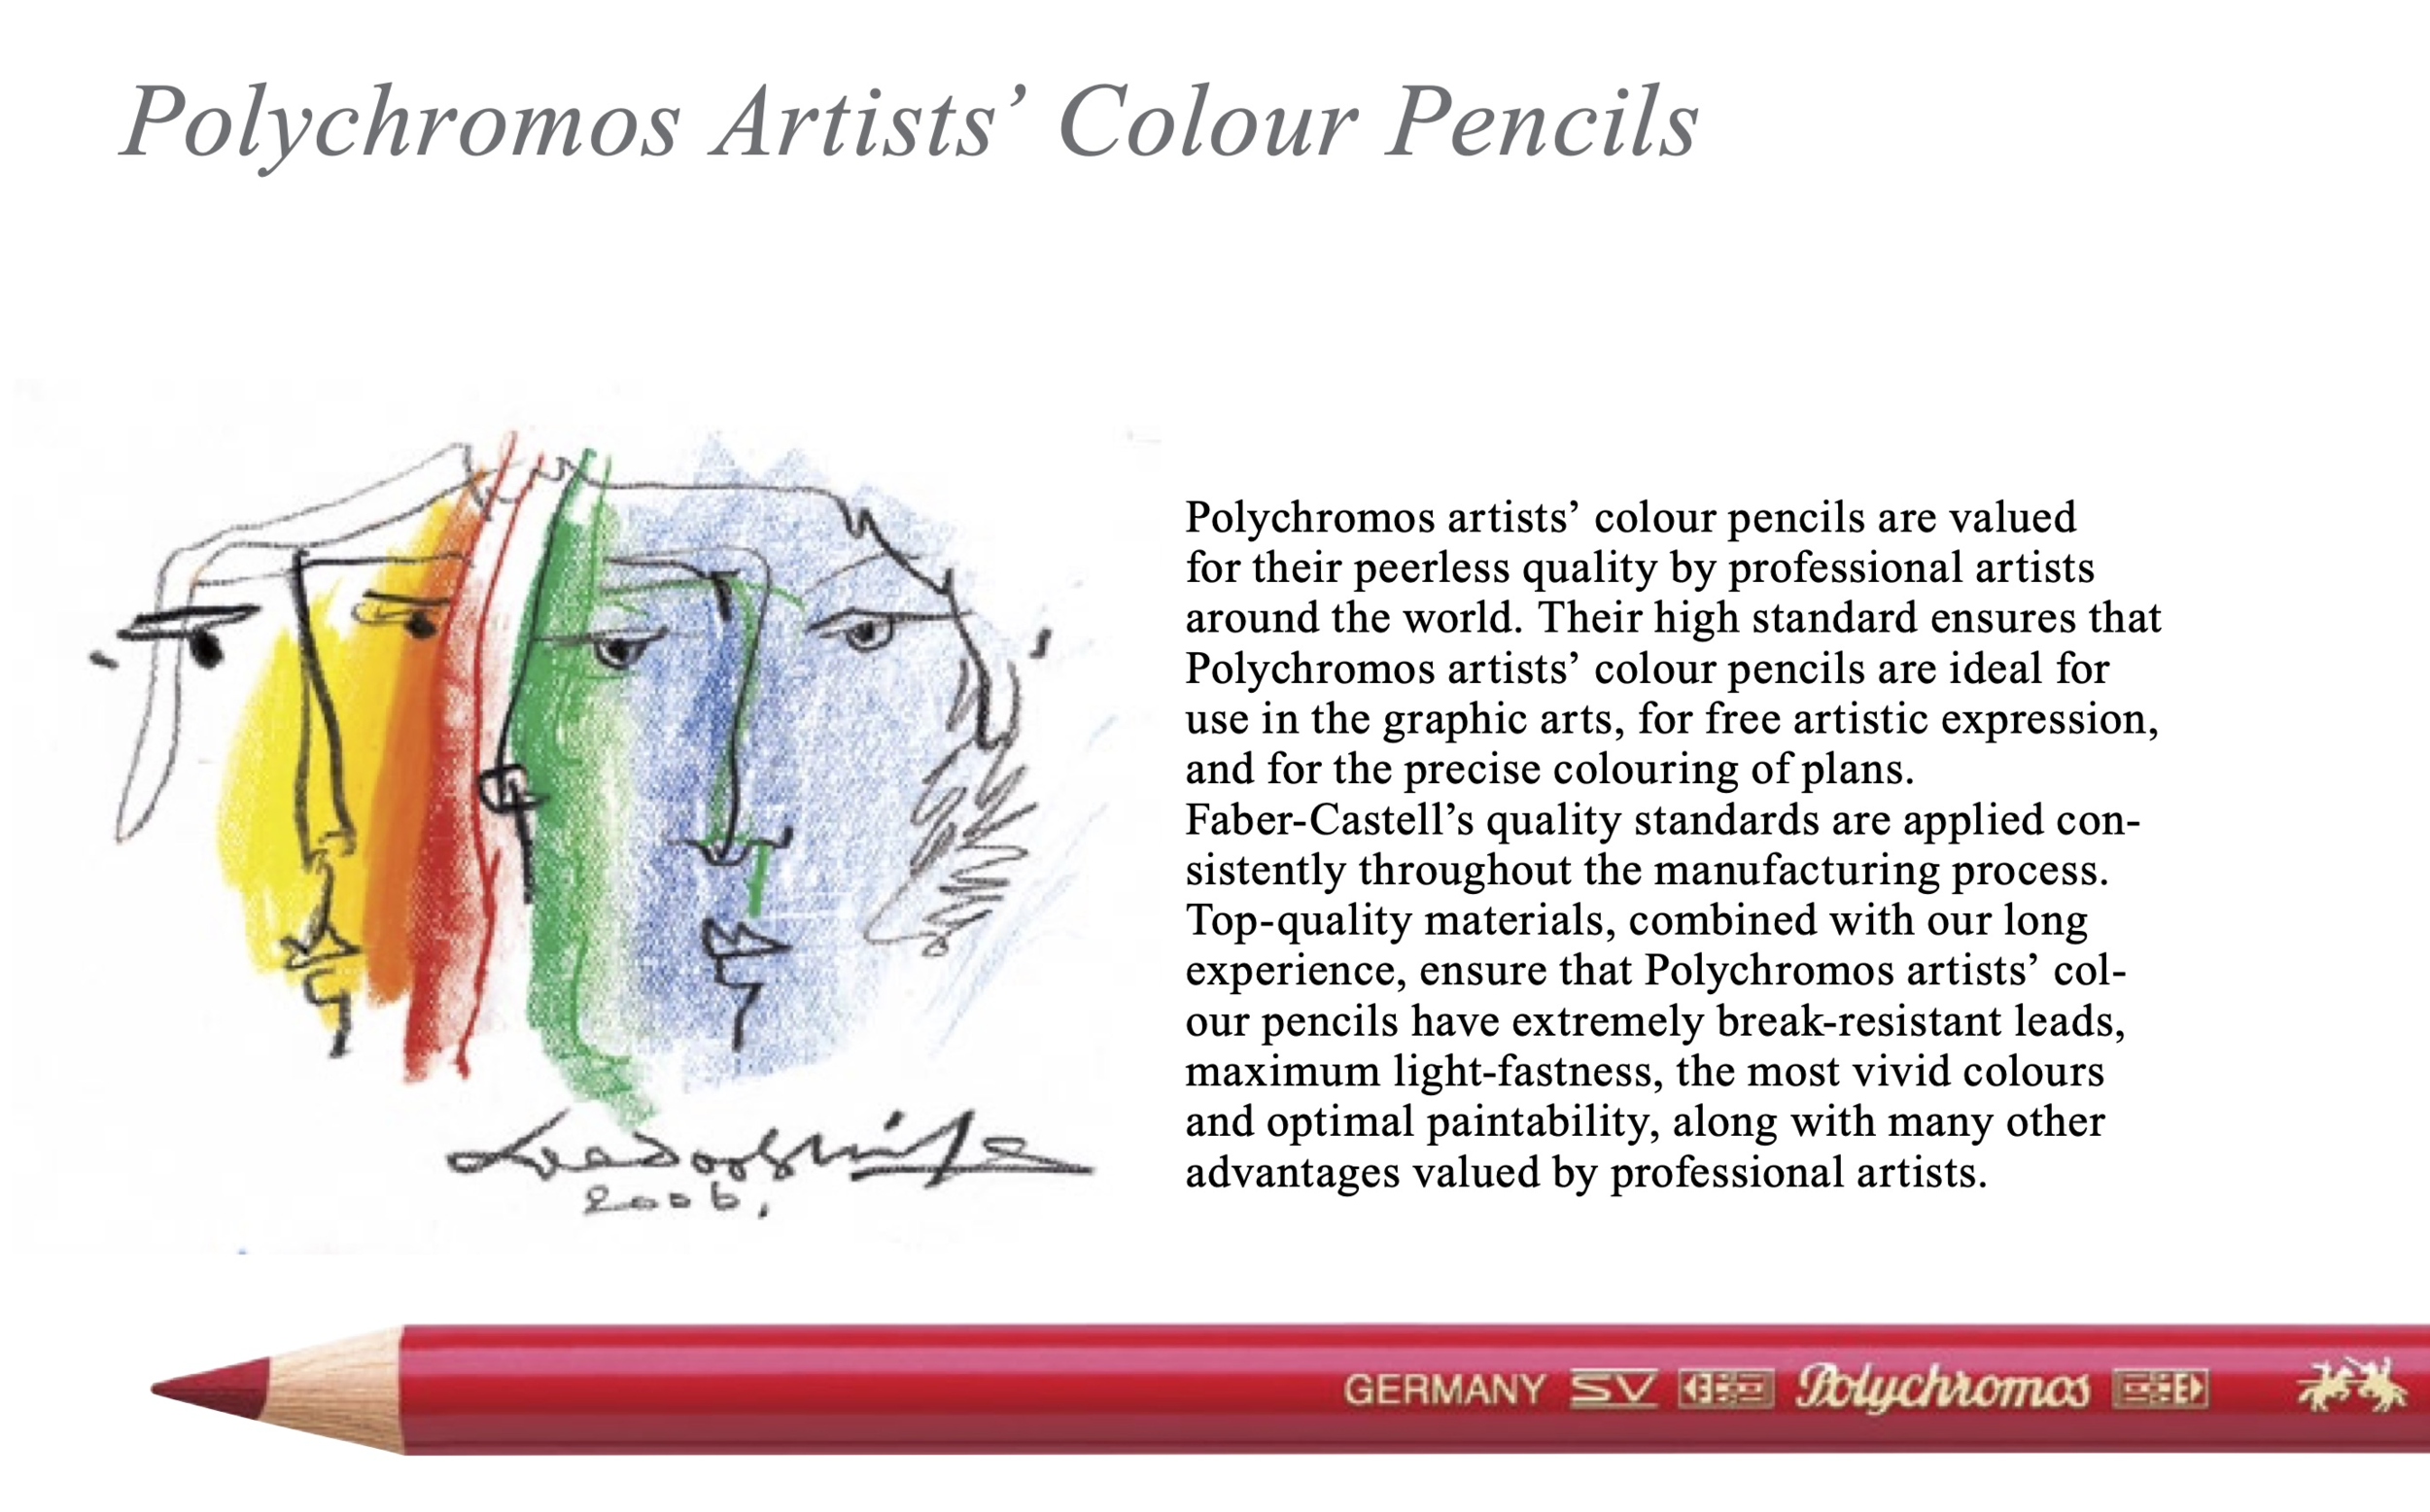 Ensemble de crayons de couleur Faber Castell Polychromos 24, 36 ou